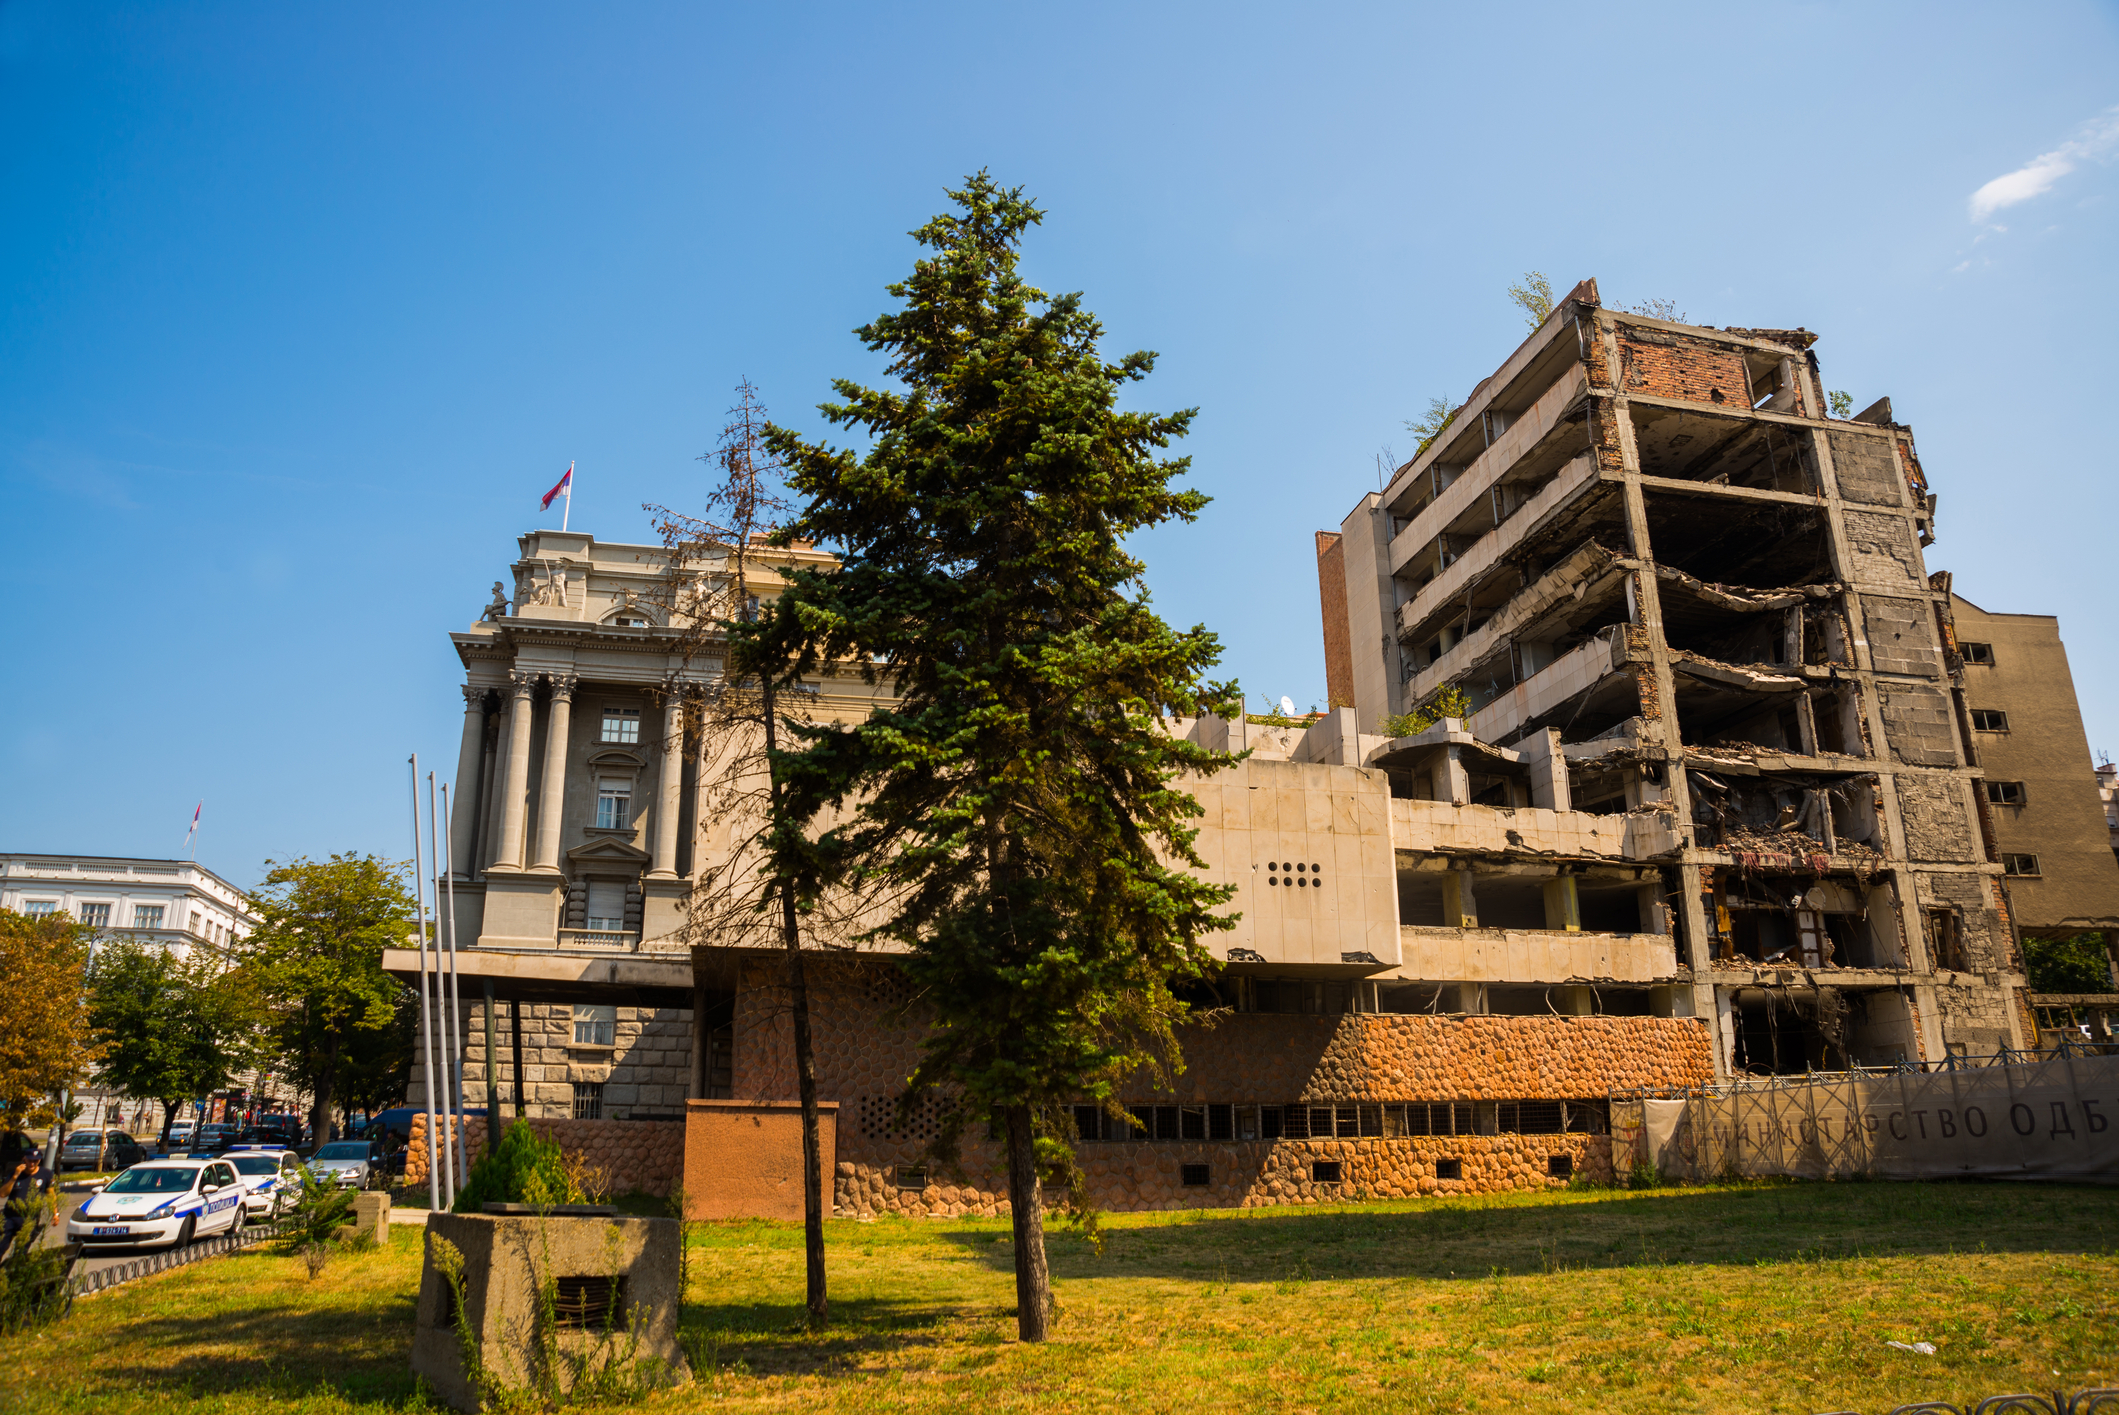 Clădirea Ministerului iugoslav al Apărării, care arată pagubele provocate de bombardamentele NATO asupra Iugoslaviei. Aceasta se află în Belgrad, Serbia de astăzi (sursă foto: Dreamstime)